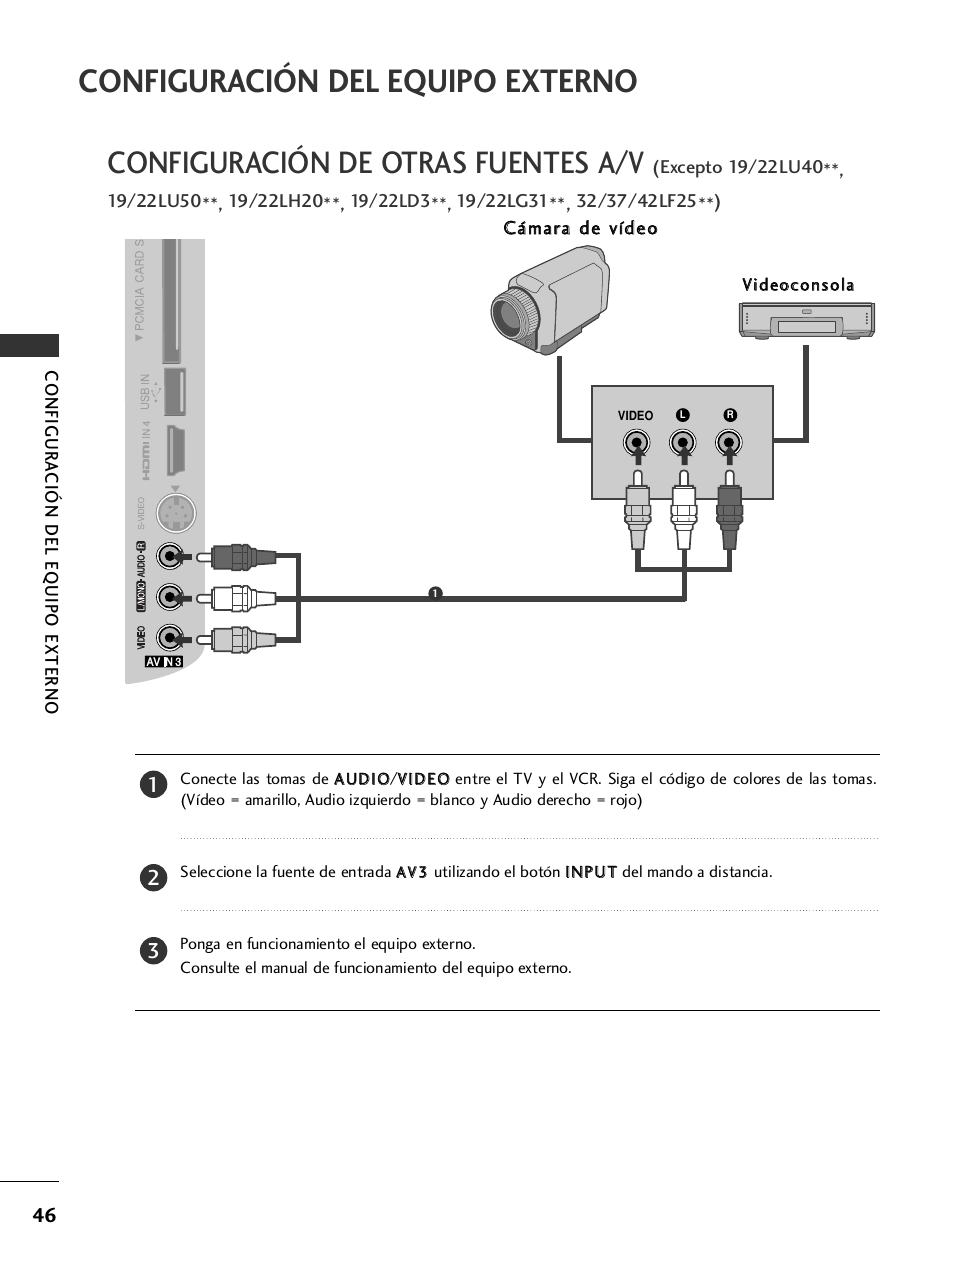 Configuración de otras fuentes a/v, Configuración del equipo externo | LG 32LH40 Manual del usuario | Página 48 / 180